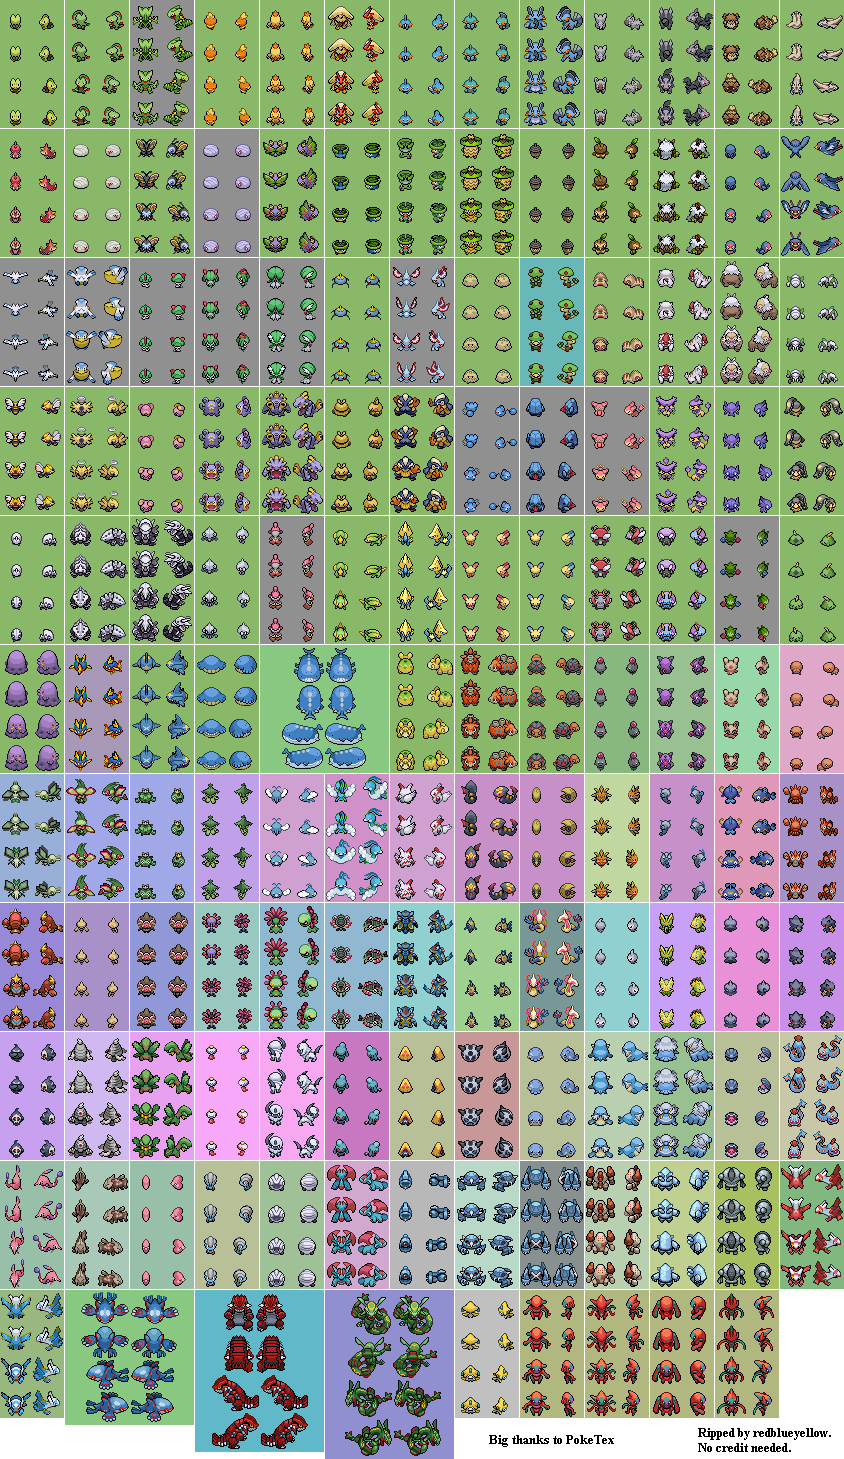 DS / DSi - Pokémon Diamond / Pearl - Pokédex - The Spriters Resource